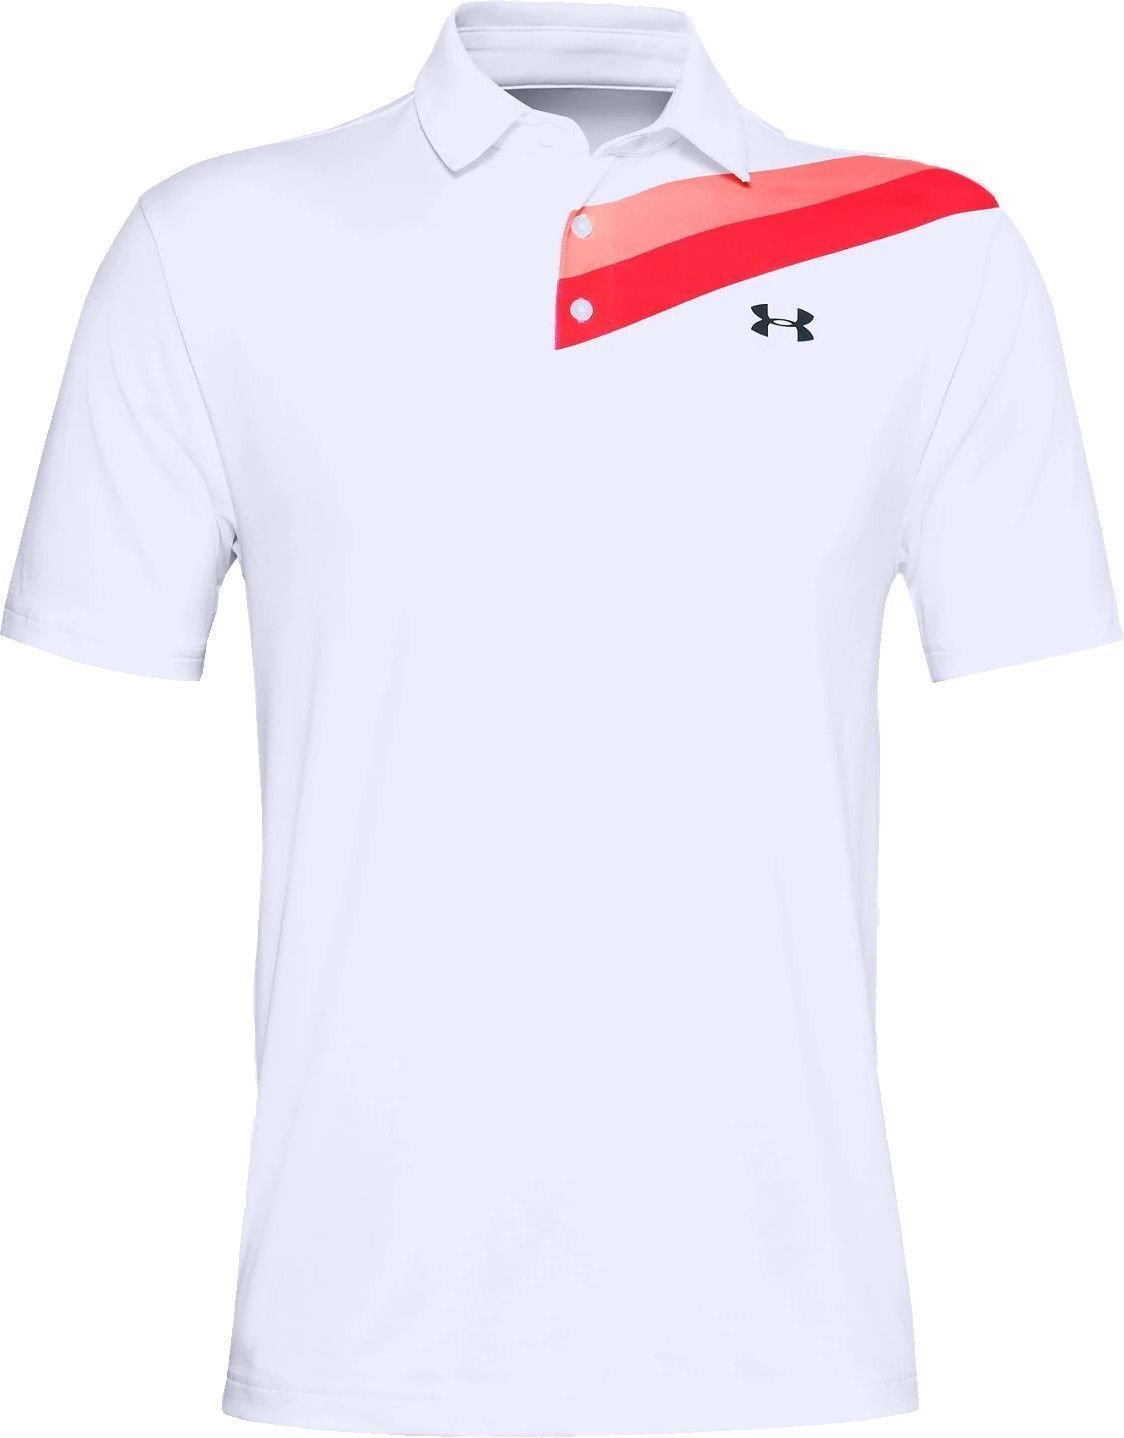 Camiseta polo Under Armour Playoff 2.0 White/Beta/Academy M